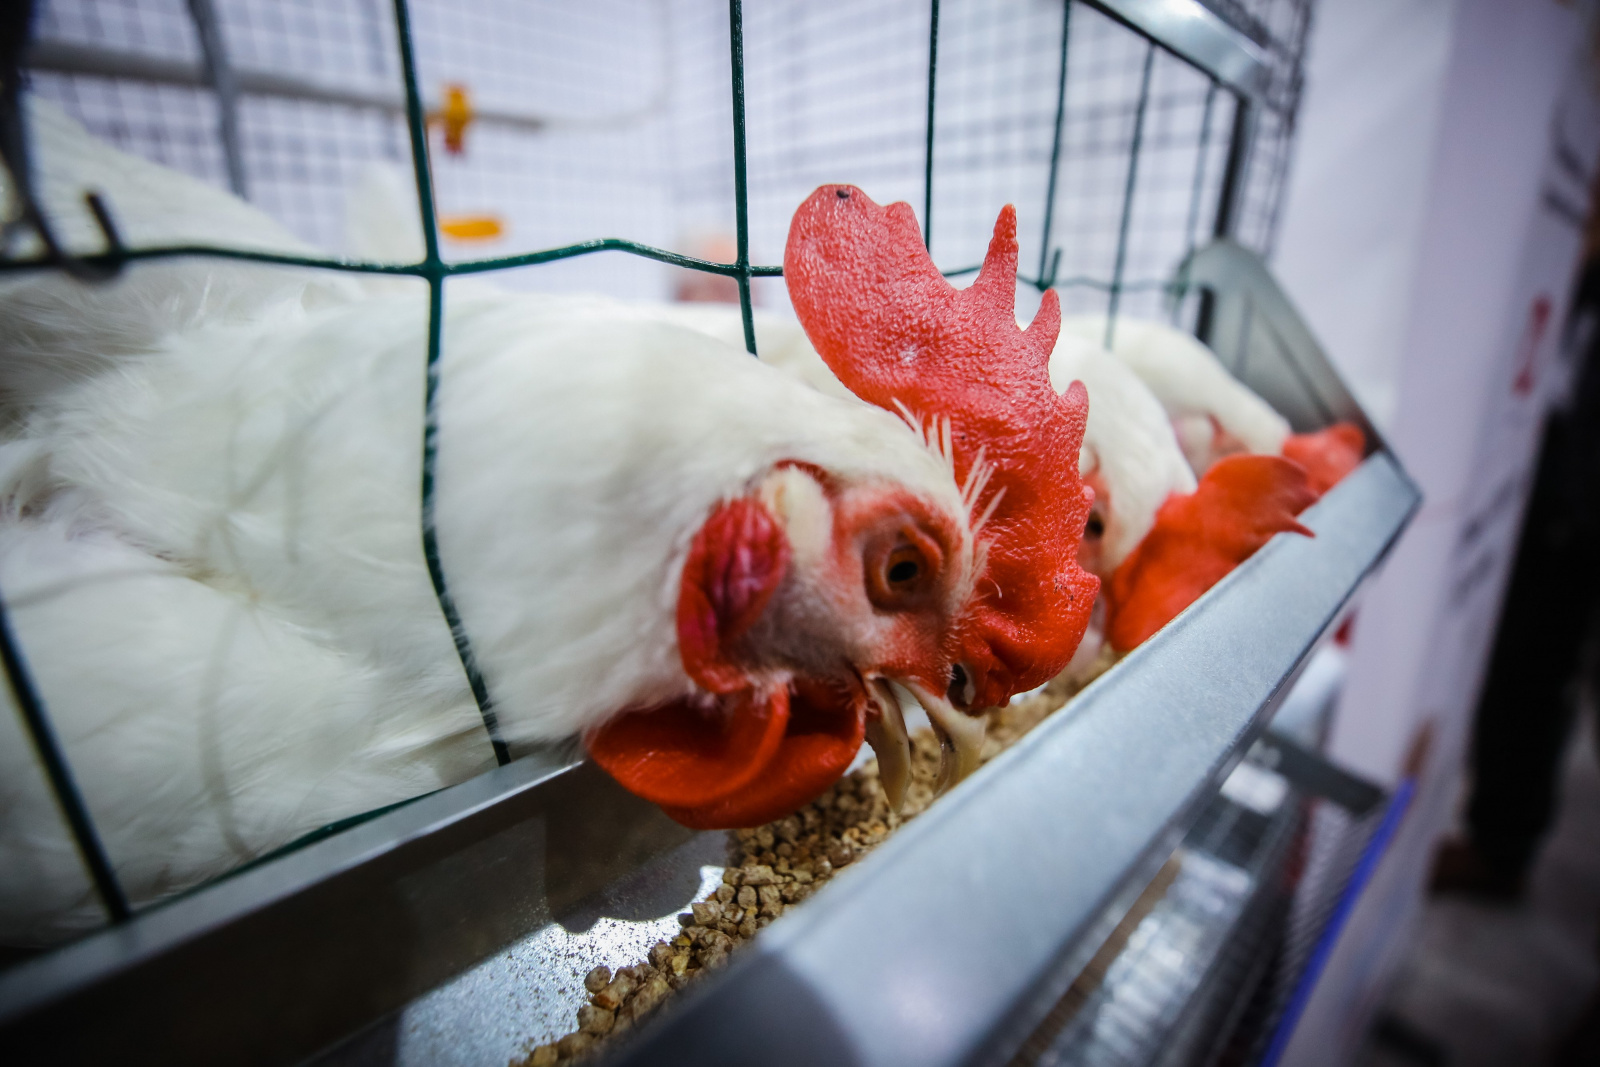 Более 200 тыс. тонн мяса птицы произведут в этом году в Липецкой области